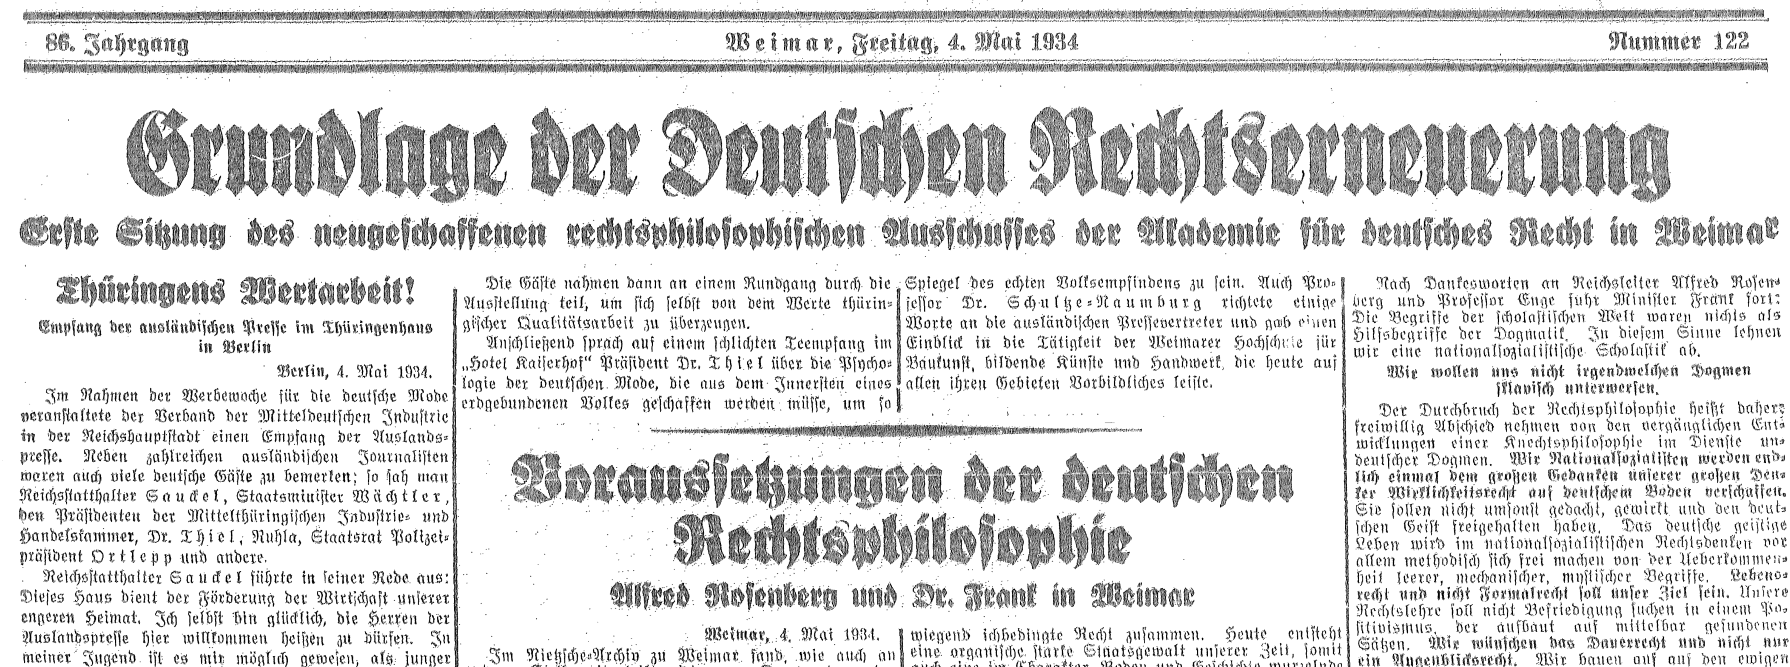 Anfang des Berichts über die Gründung des Ausschusses für Rechtsphilosophie am 3. Mai 1934 auf der Titelseite der Allgemeinen Thüringischen Landeszeitung Deutschland vom 4. Mai 1934